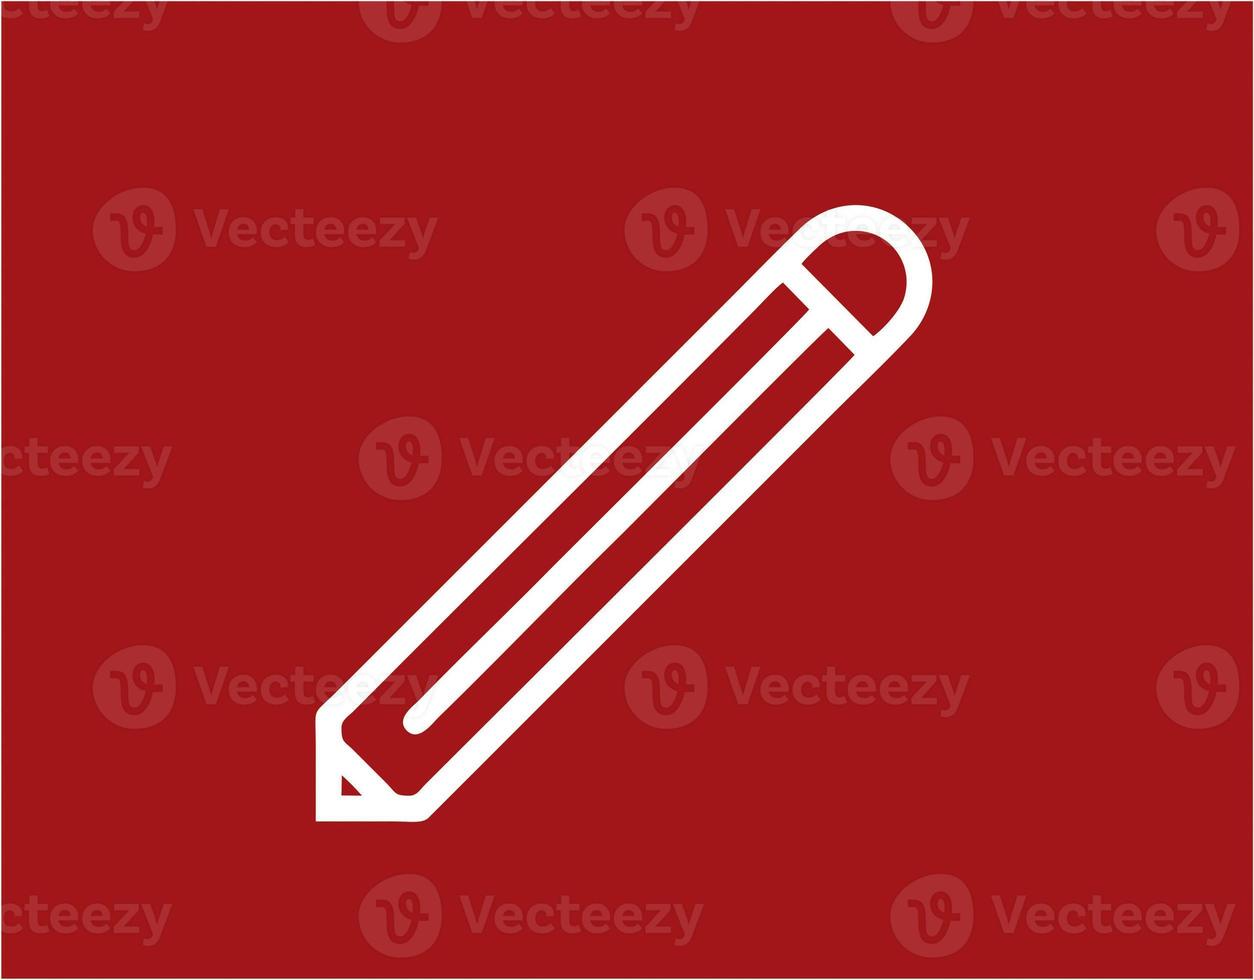 icona a forma di matita nell'immagine rossa, illustrazione di una matita in bianco su sfondo rosso, un disegno a penna su sfondo rosso foto